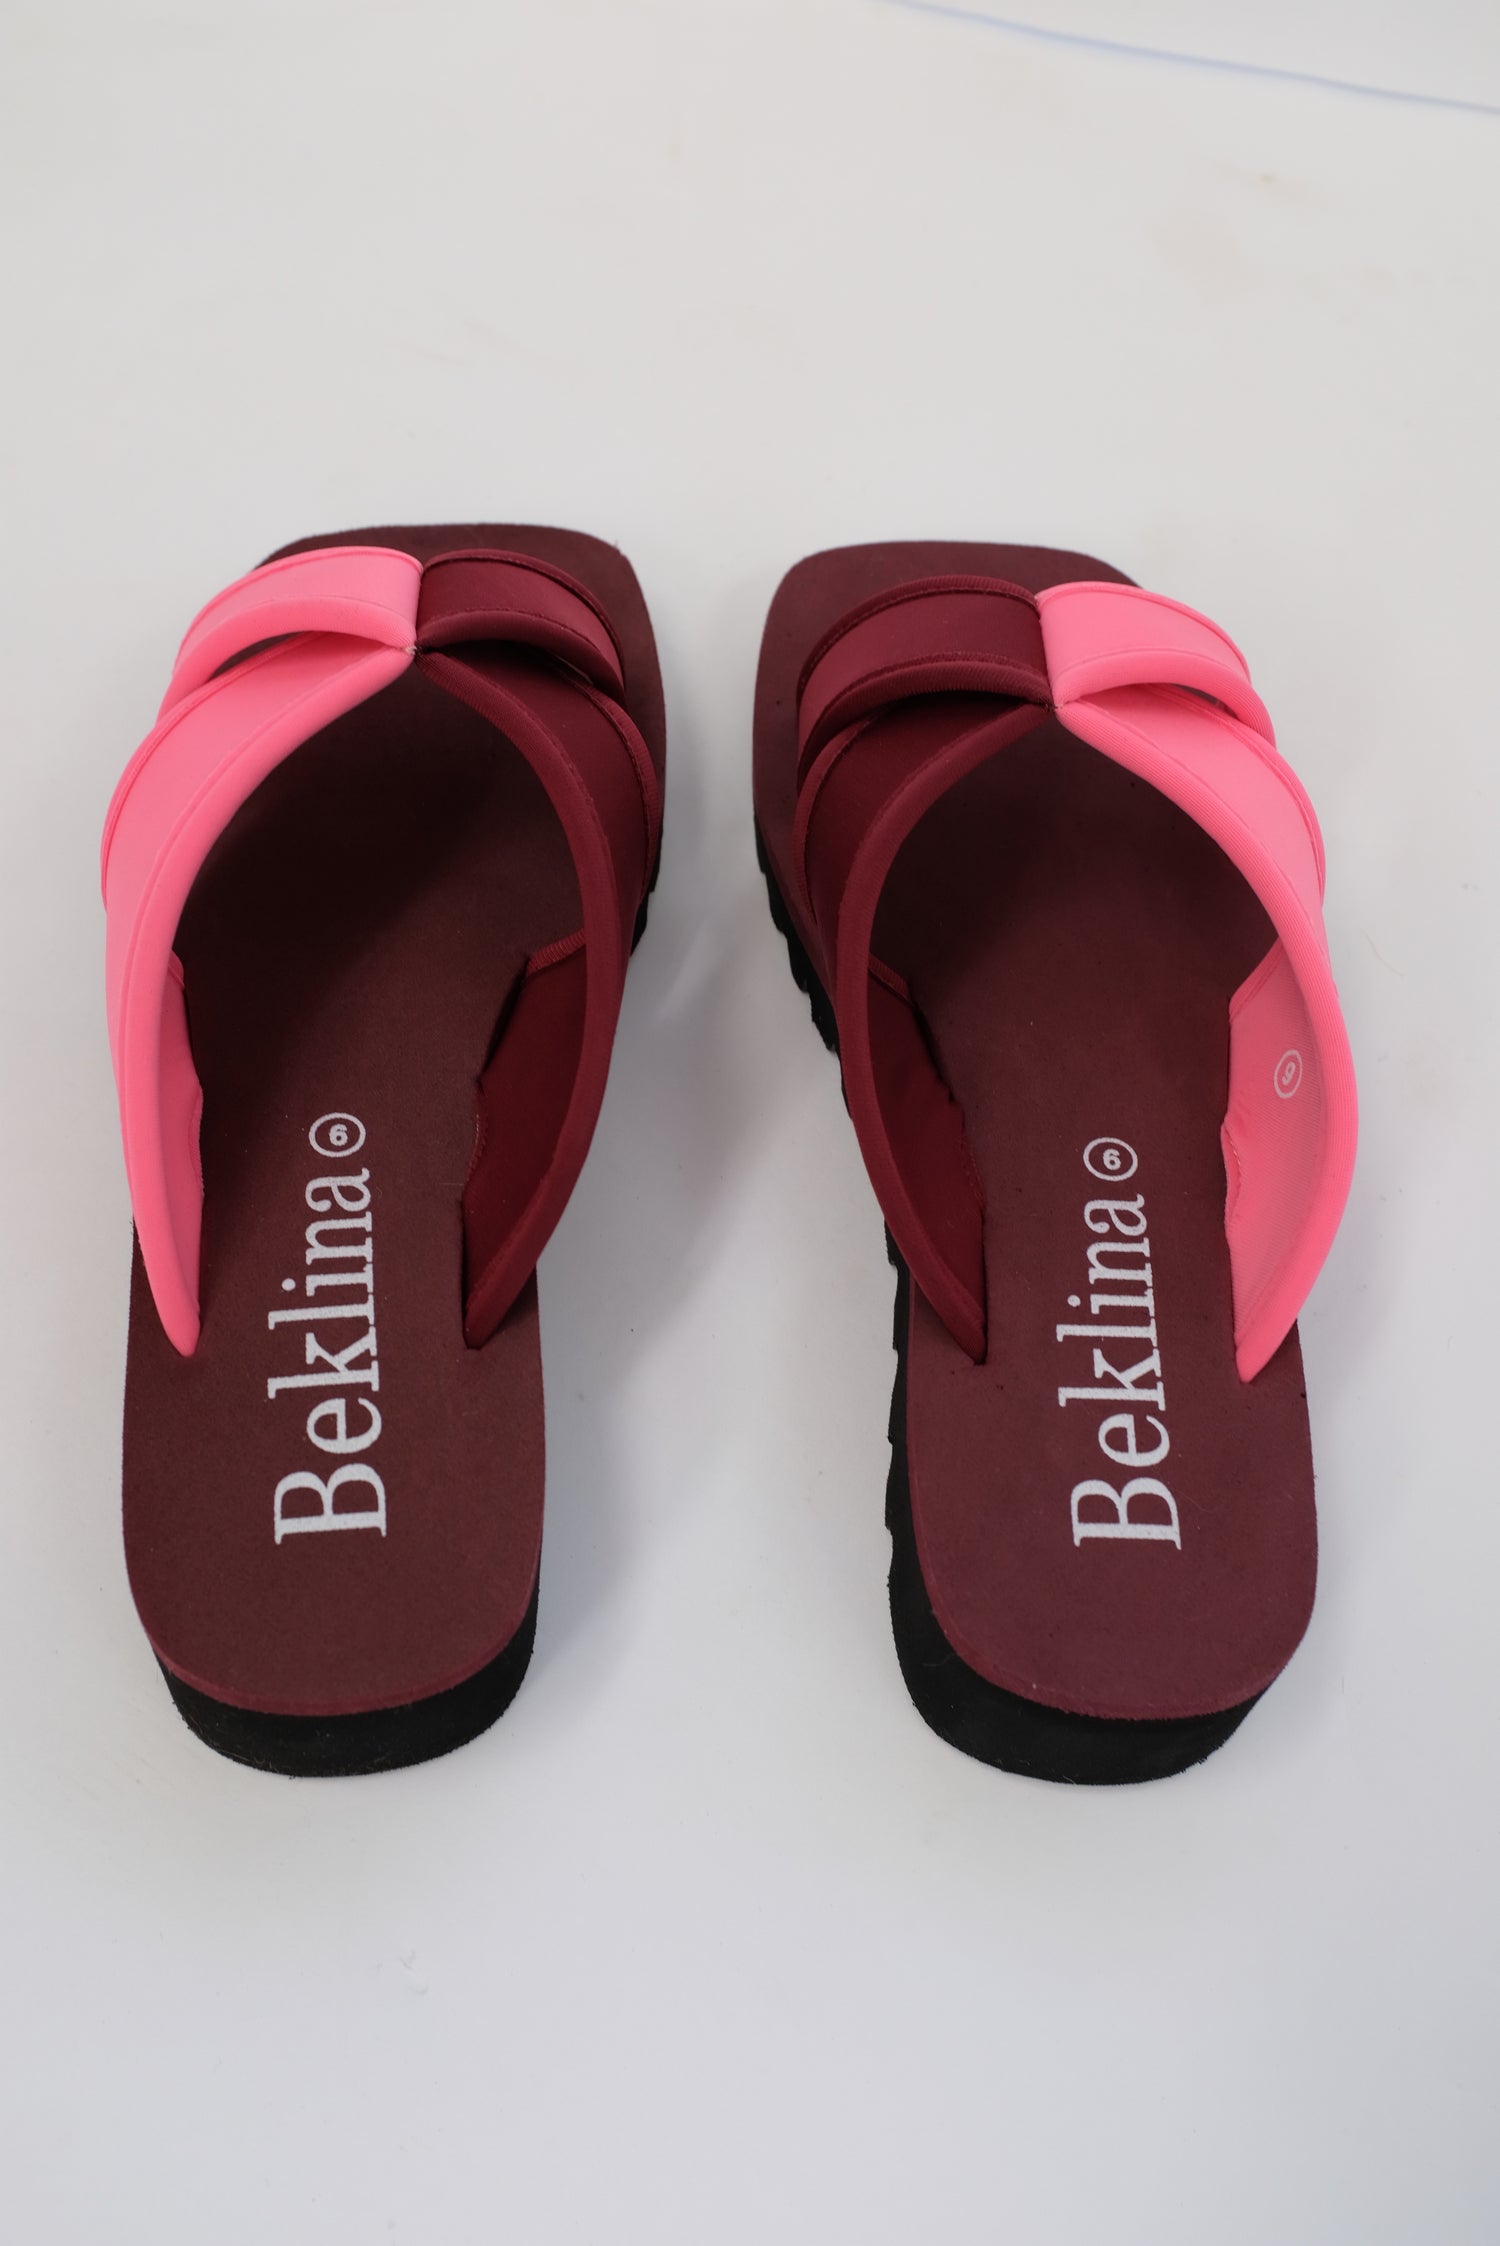 Beklina Water Sandal Slide Pink/Magenta